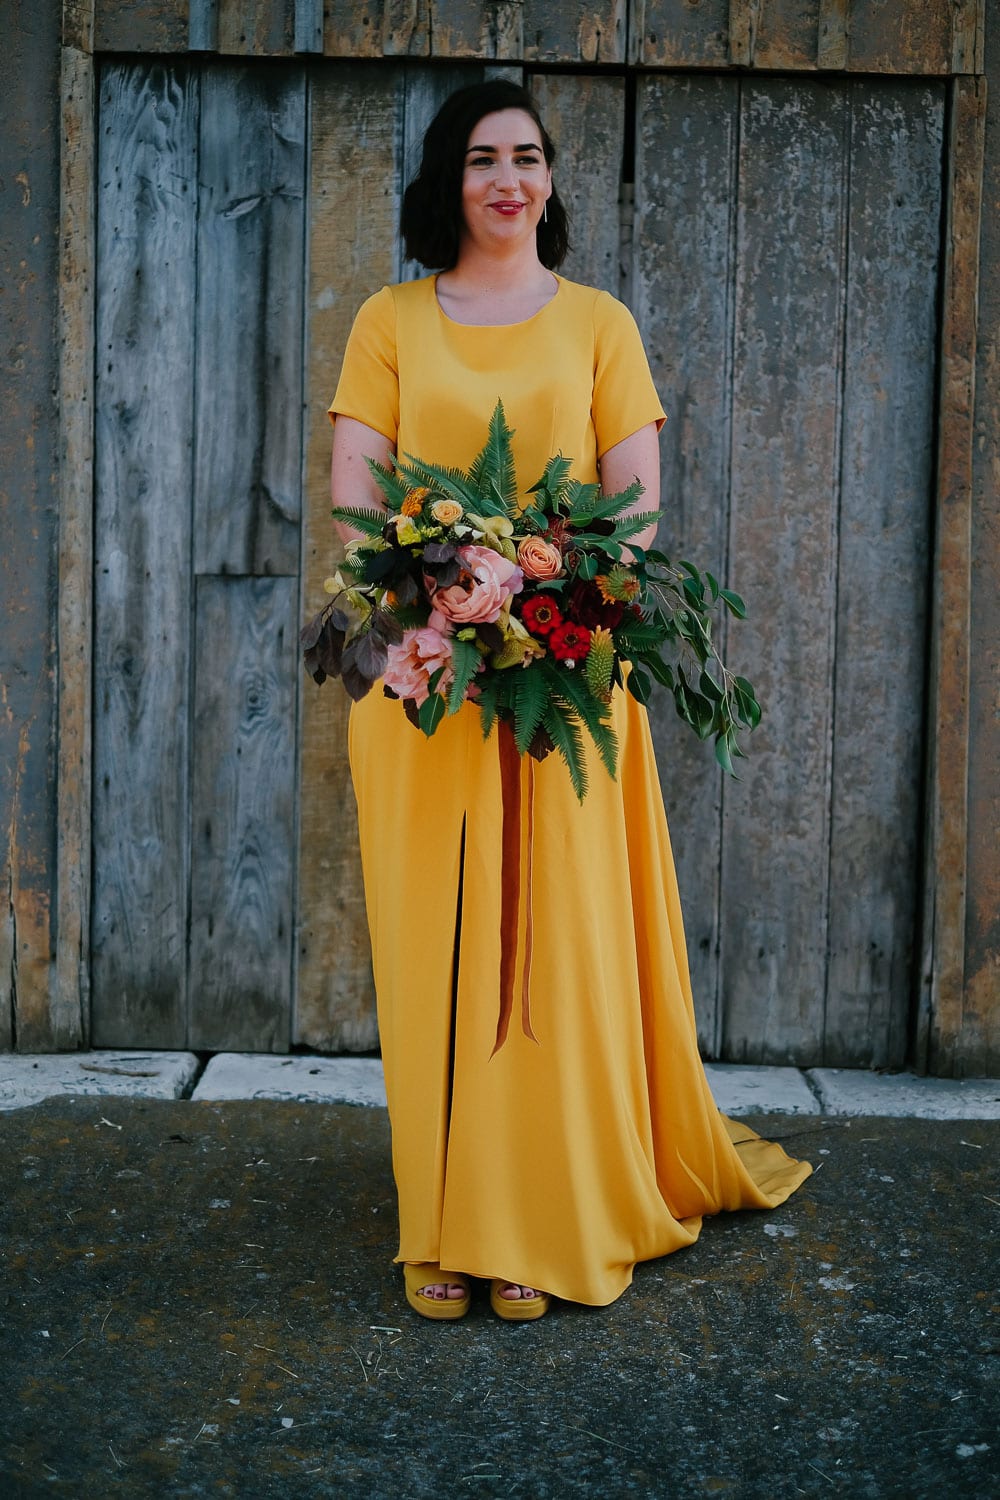 yellow wedding dress by sarah seven perfect for elopement #sarahseven #bridedress #yellowweddingdress #elopement